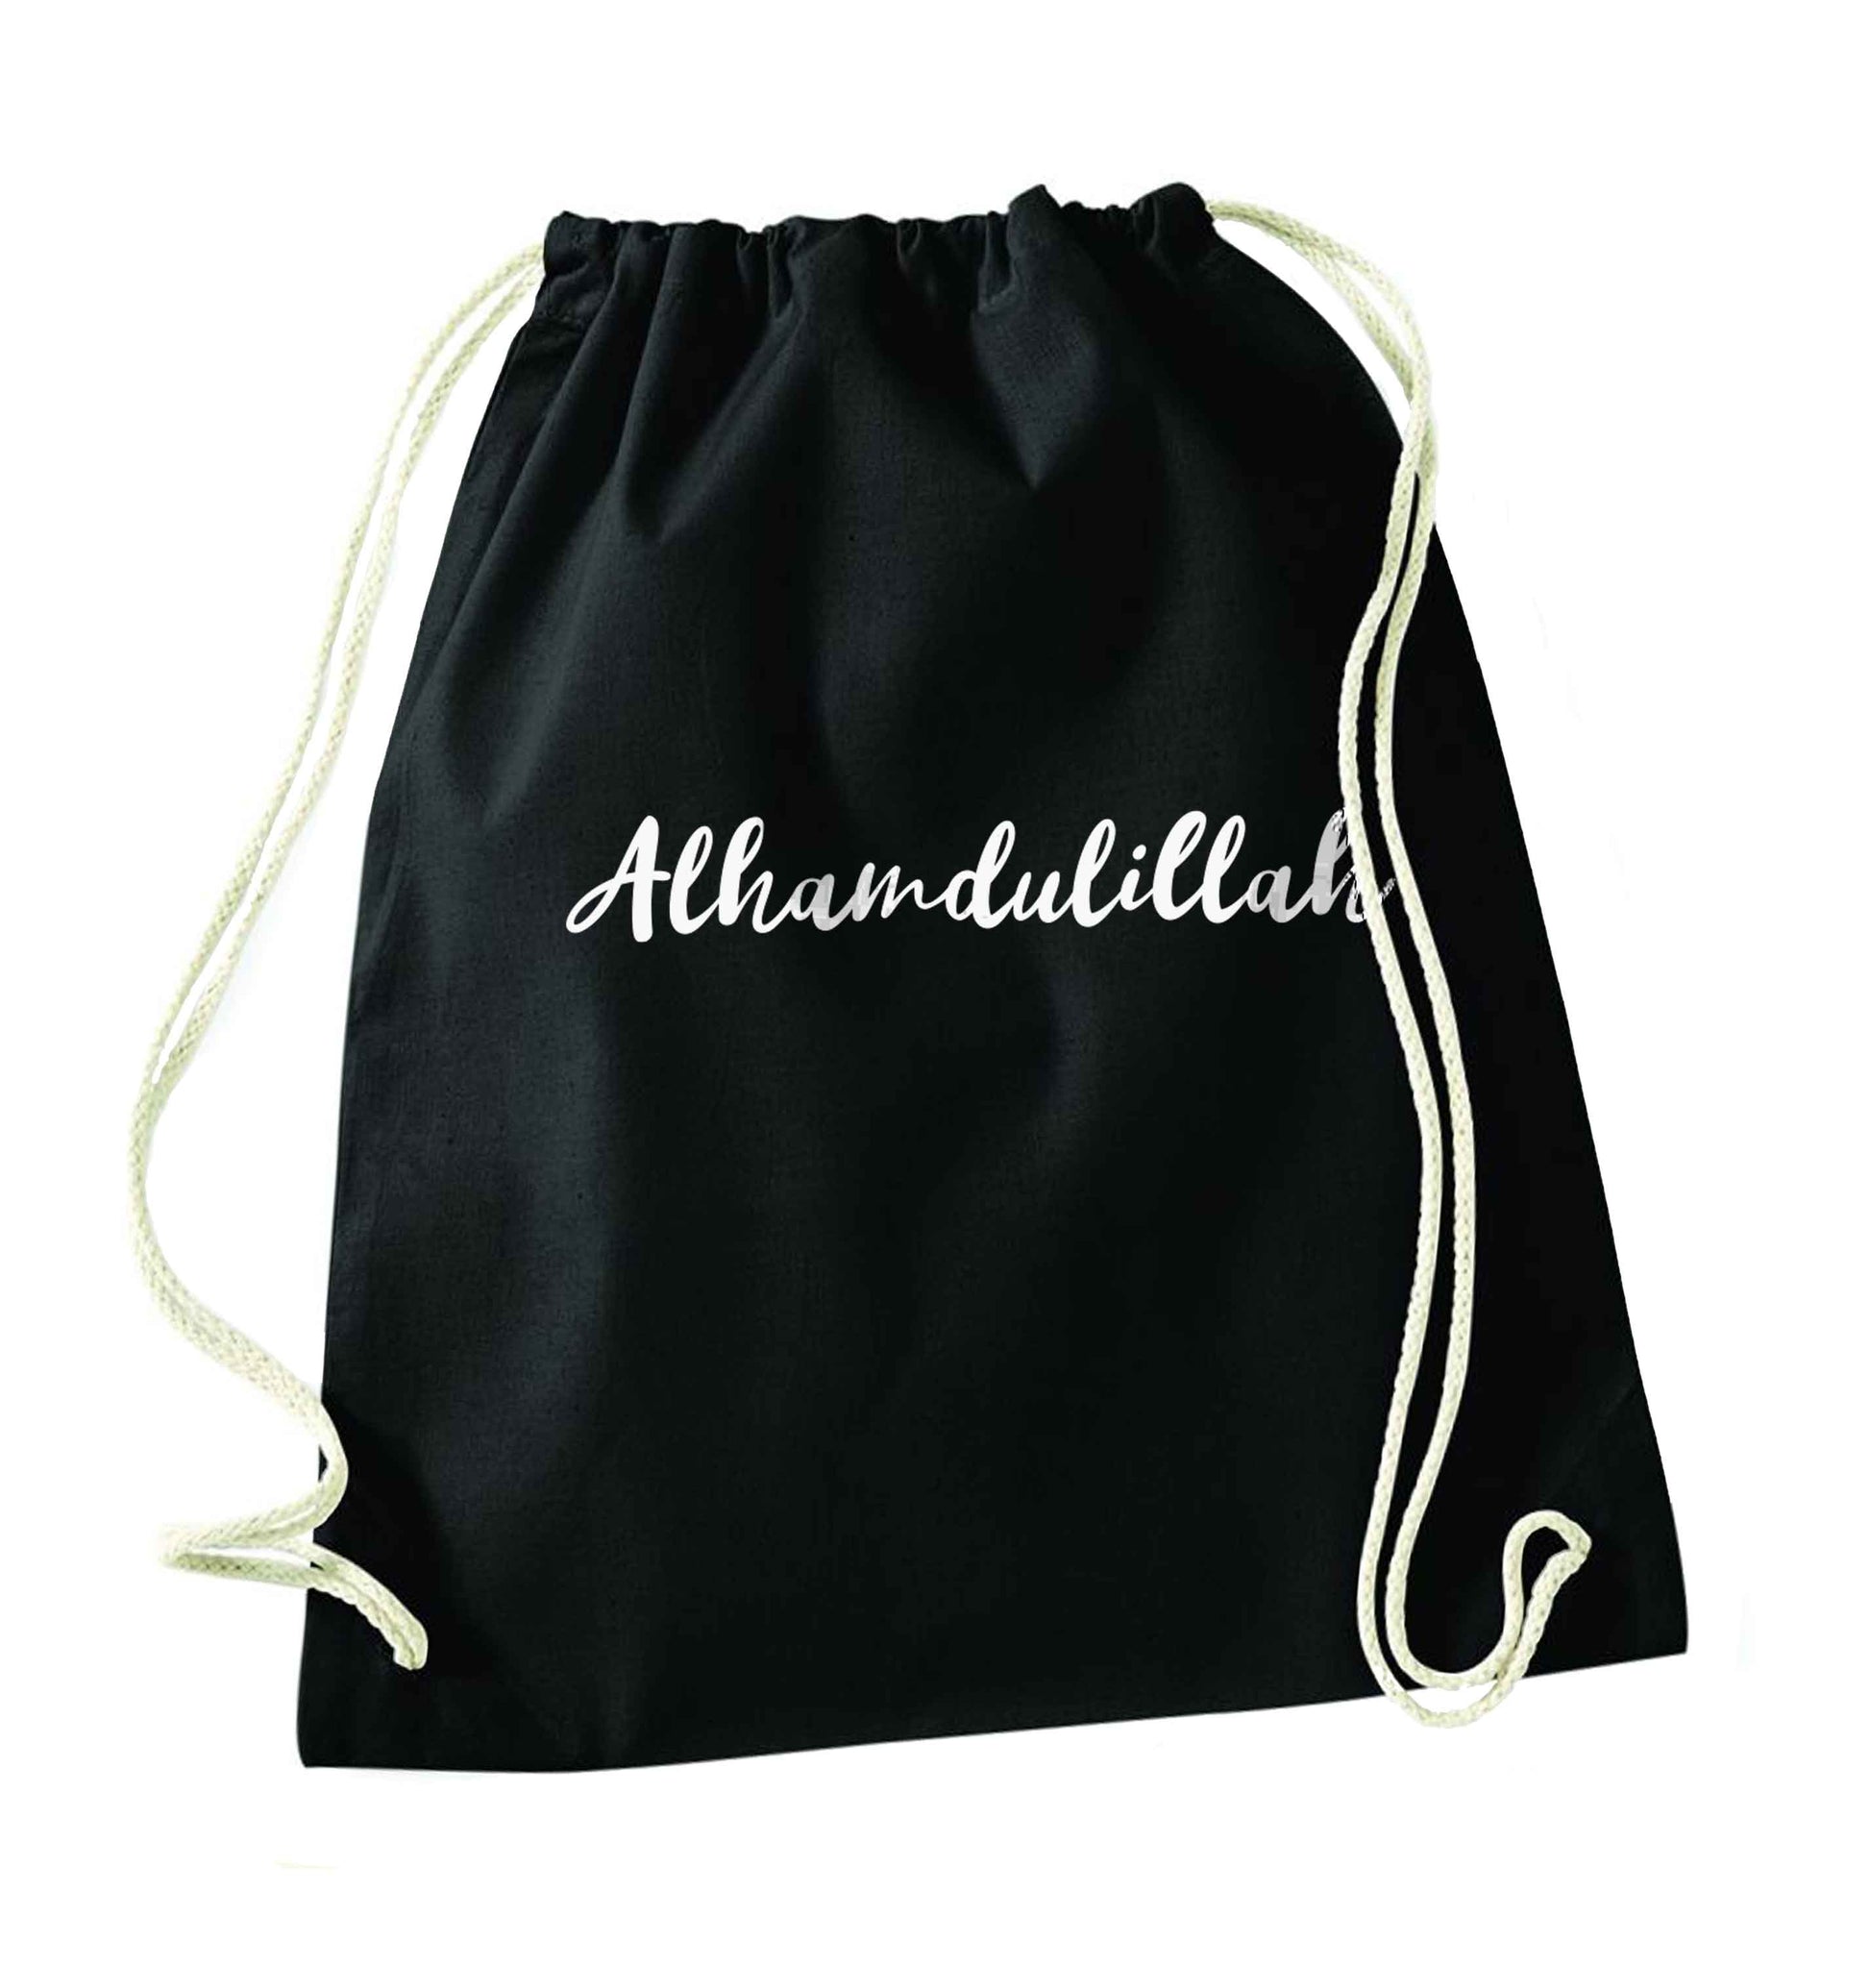 alhamdulillah black drawstring bag